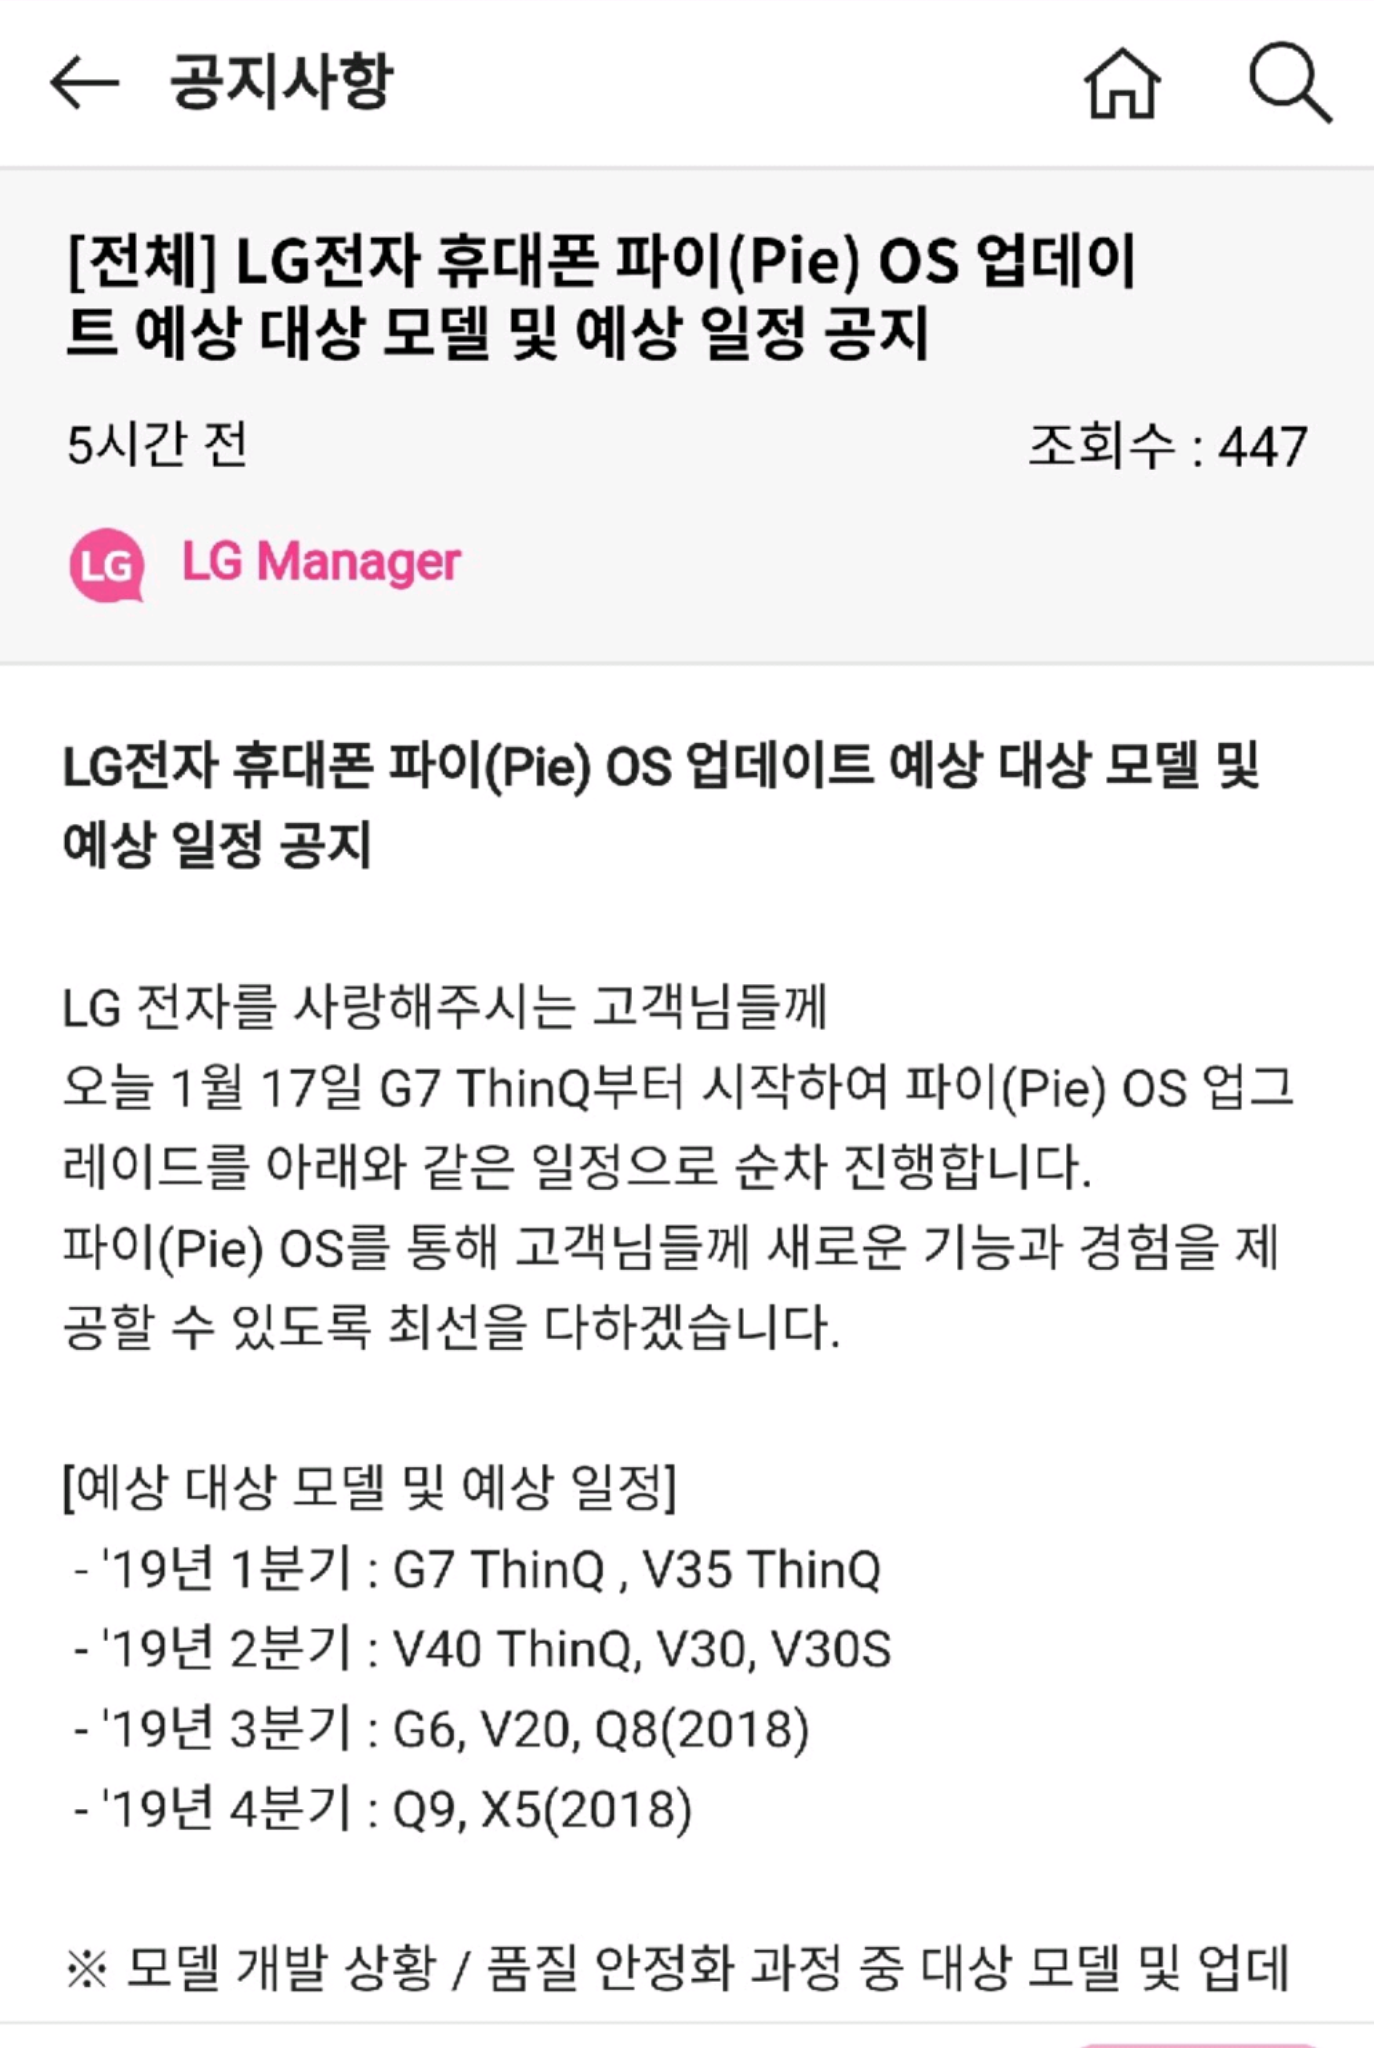 Actualización de LG V35 Pie